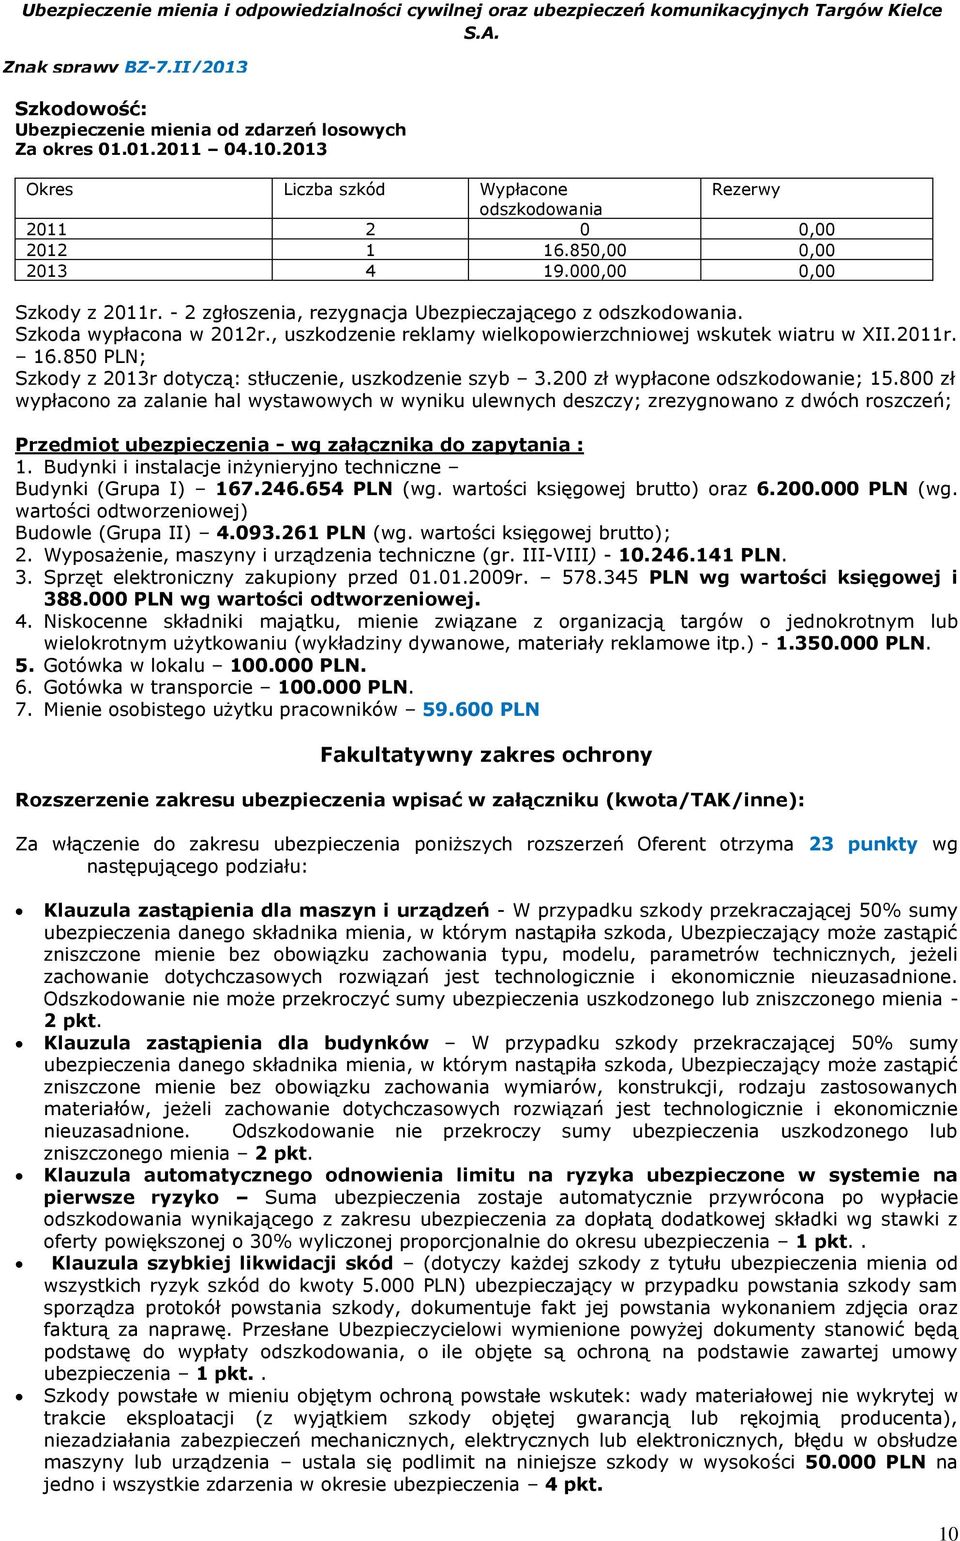 850 PLN; Szkody z 2013r dotyczą: stłuczenie, uszkodzenie szyb 3.200 zł wypłacone odszkodowanie; 15.